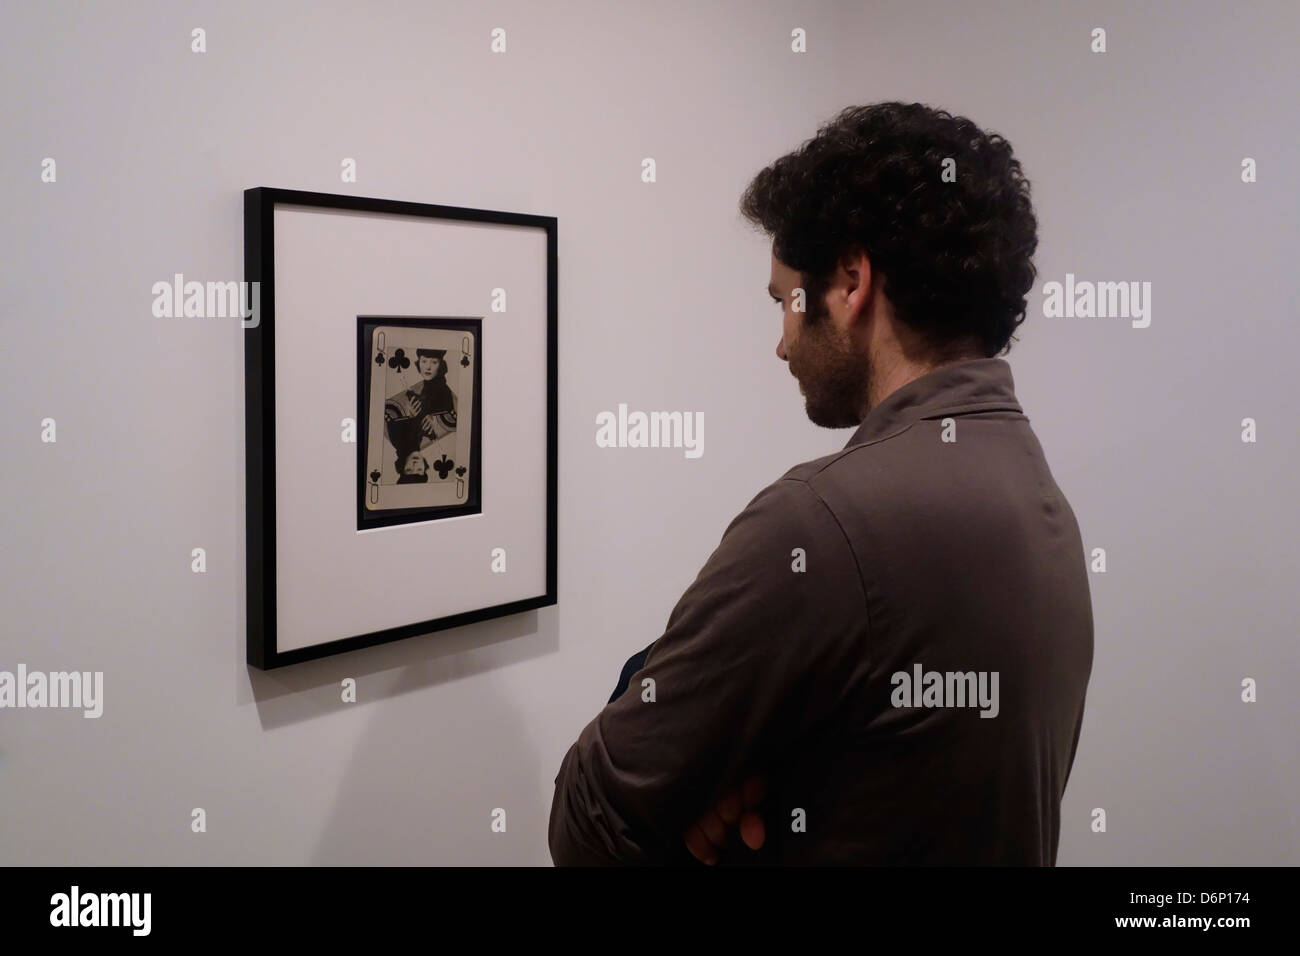 À la recherche d'un visiteur à Man Ray photographie dans une exposition de photos consacrée au surréalisme & mouvement Dada à Tel Aviv, Israël Banque D'Images